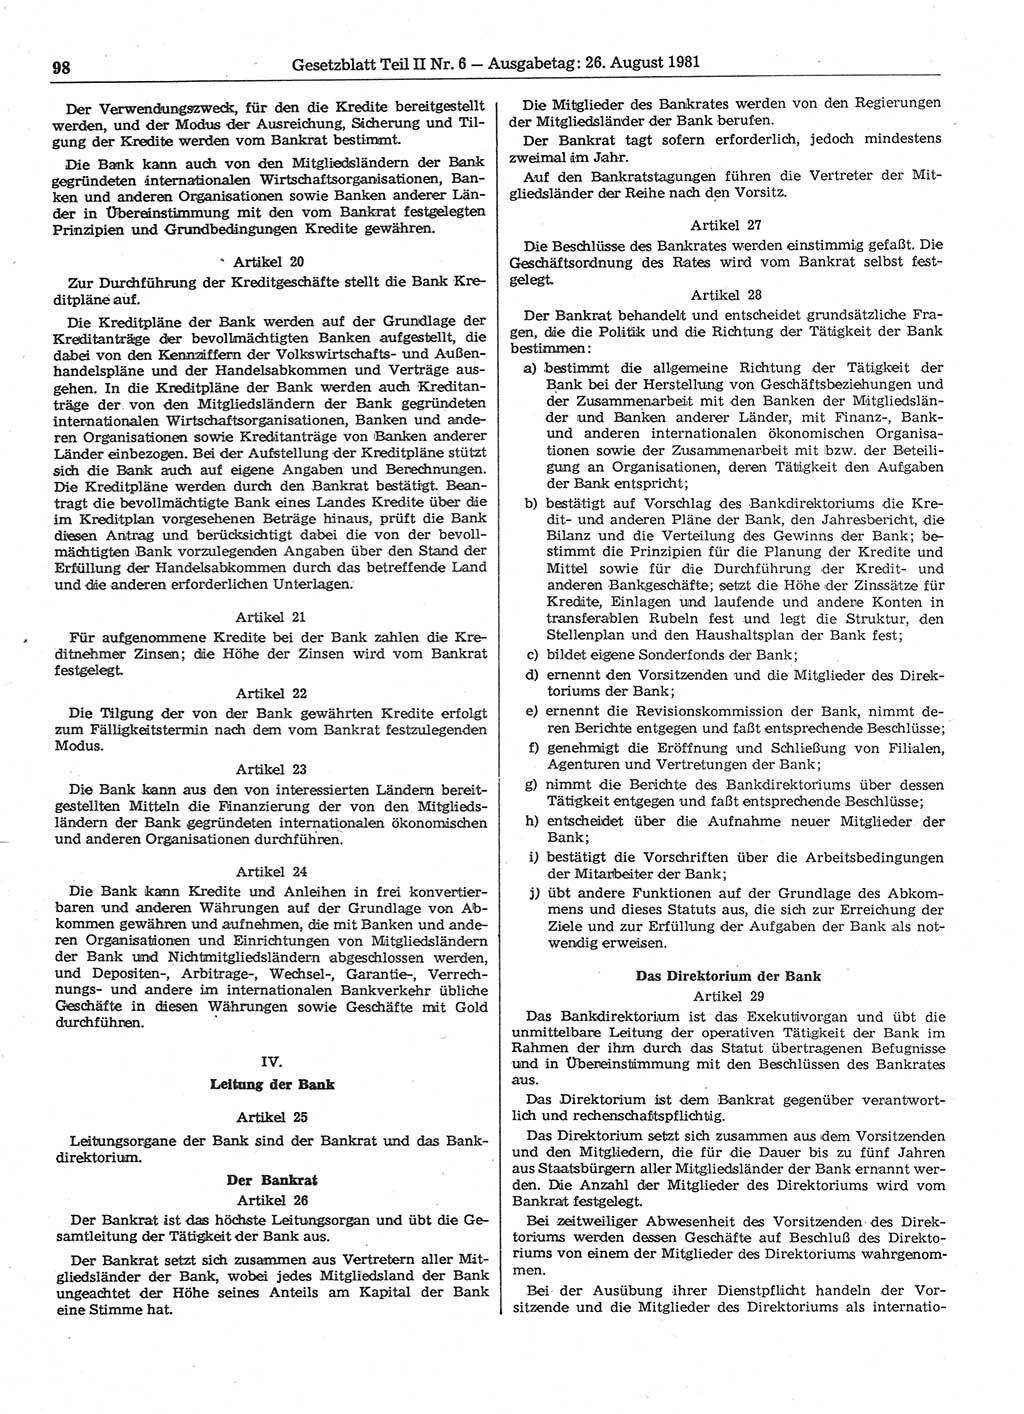 Gesetzblatt (GBl.) der Deutschen Demokratischen Republik (DDR) Teil ⅠⅠ 1981, Seite 98 (GBl. DDR ⅠⅠ 1981, S. 98)